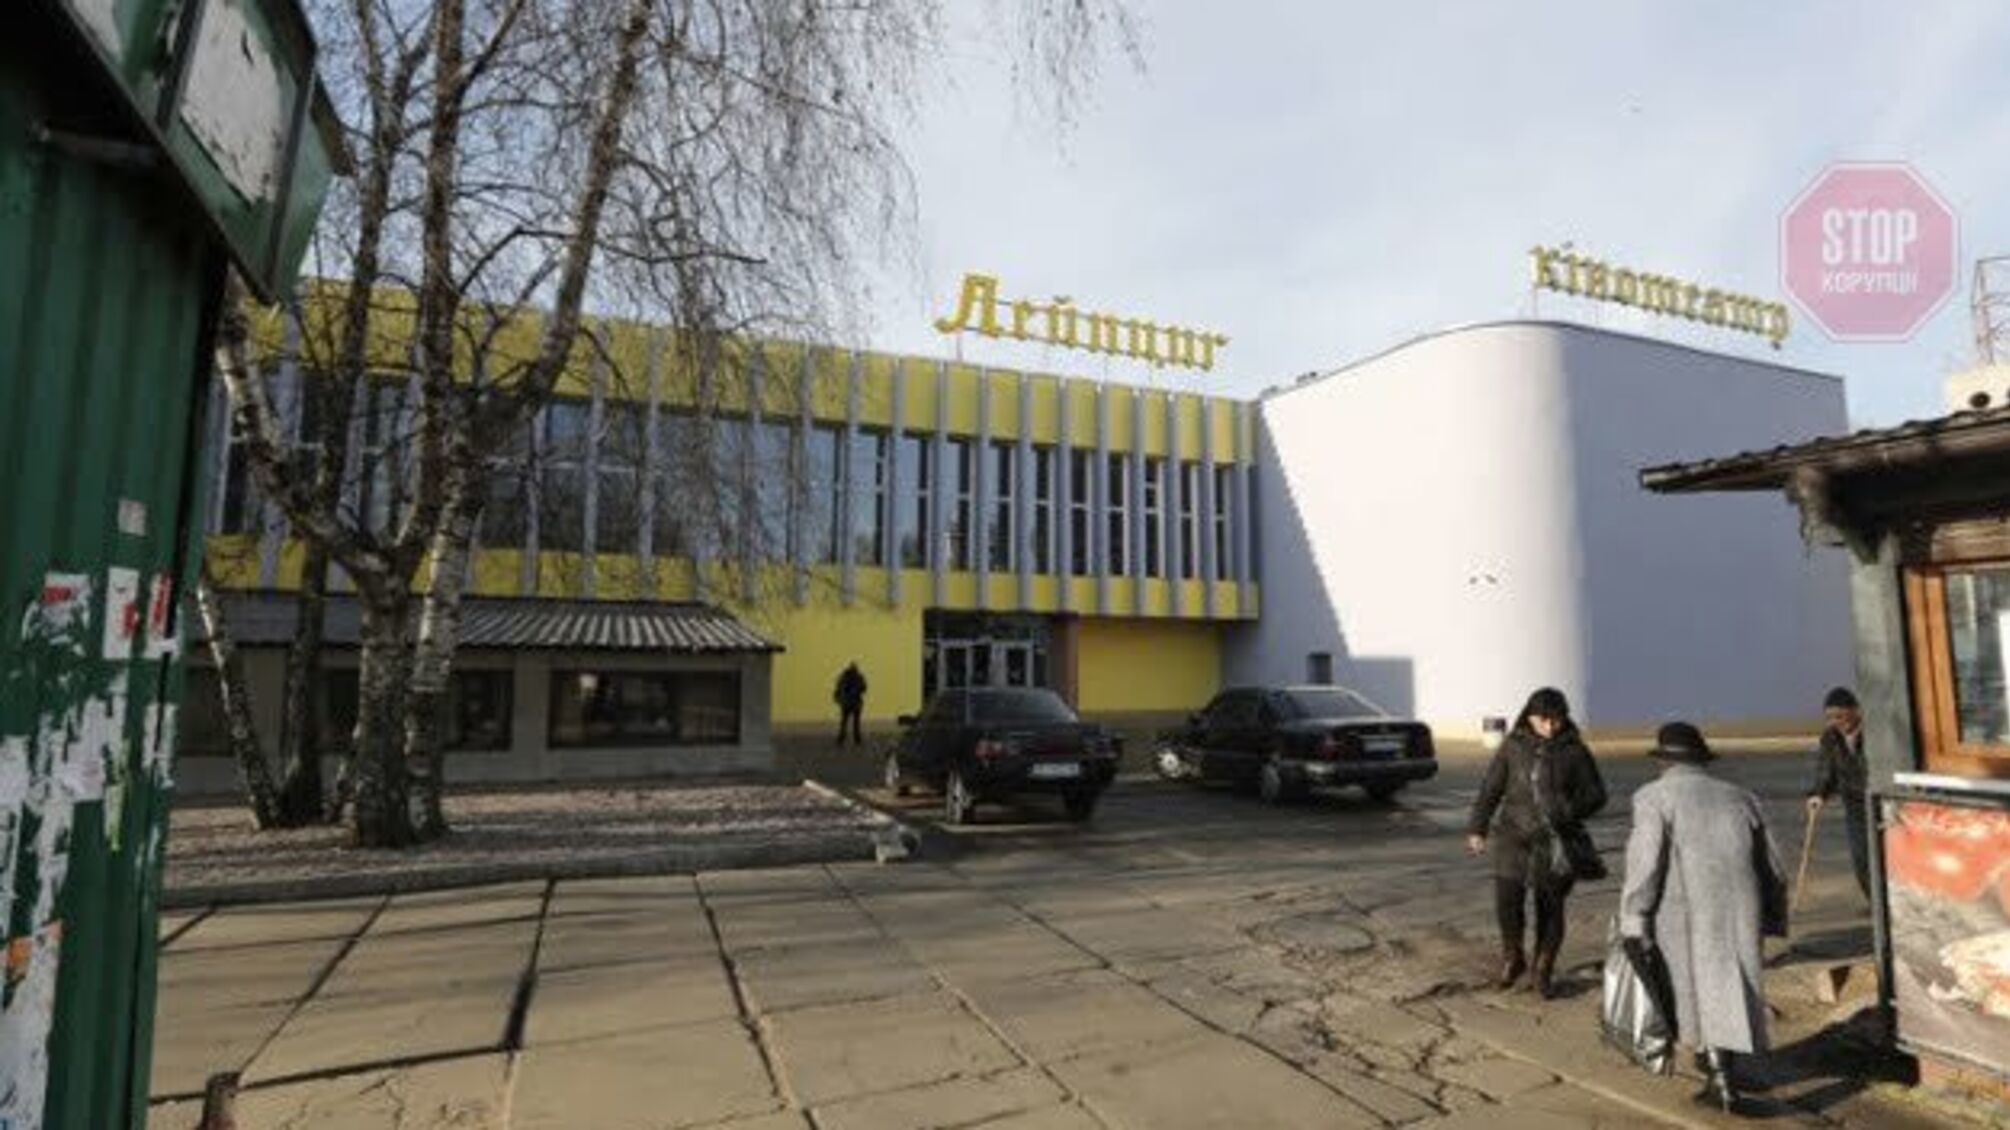 Столичний мер показав реконструкційні роботи київських кінотеатрів